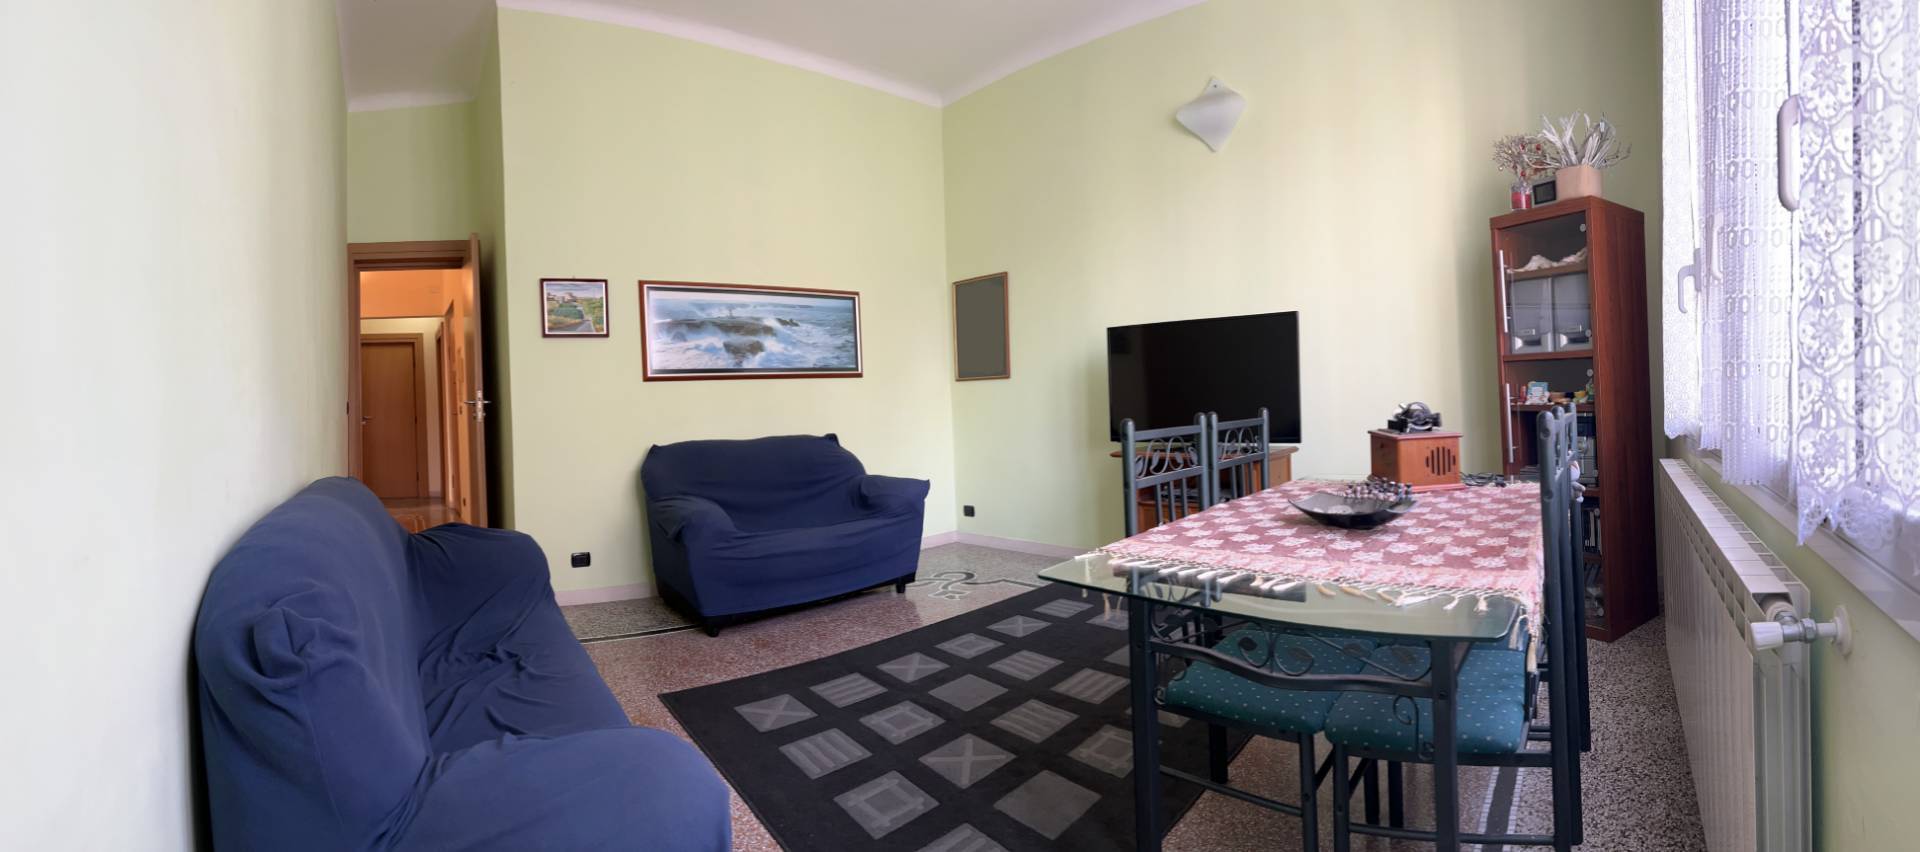 Appartamento in vendita, Savona villapiana